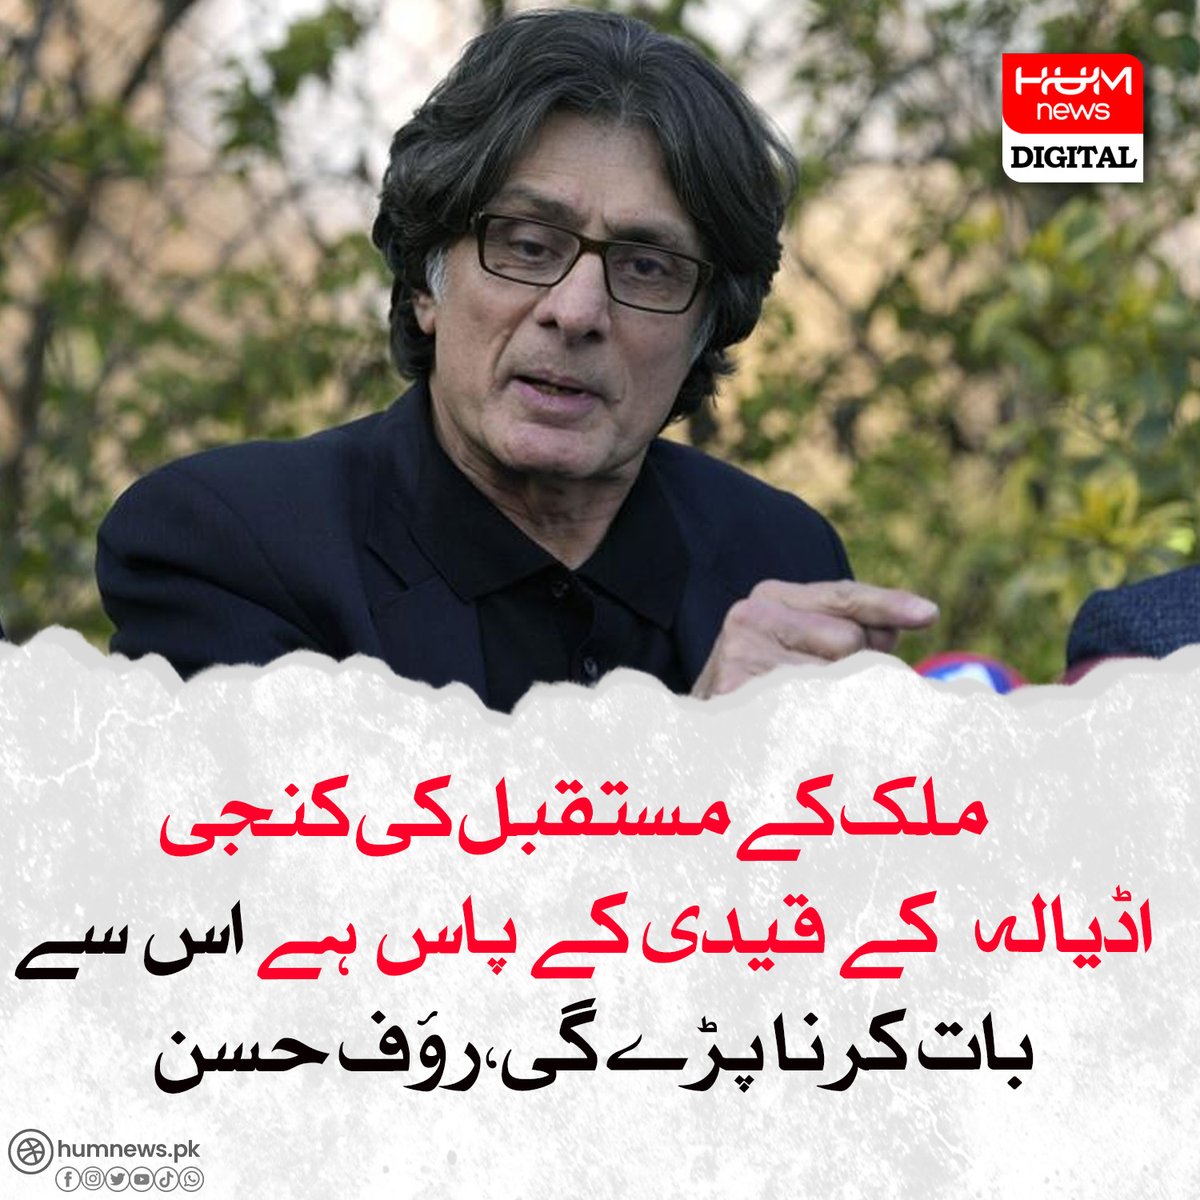 ملک کے مستقبل کی کنجی اڈیالہ کے قیدی کے پاس ہے اس سے بات کرنا پڑے گی،رؤف حسن
humnews.pk/latest/480019/